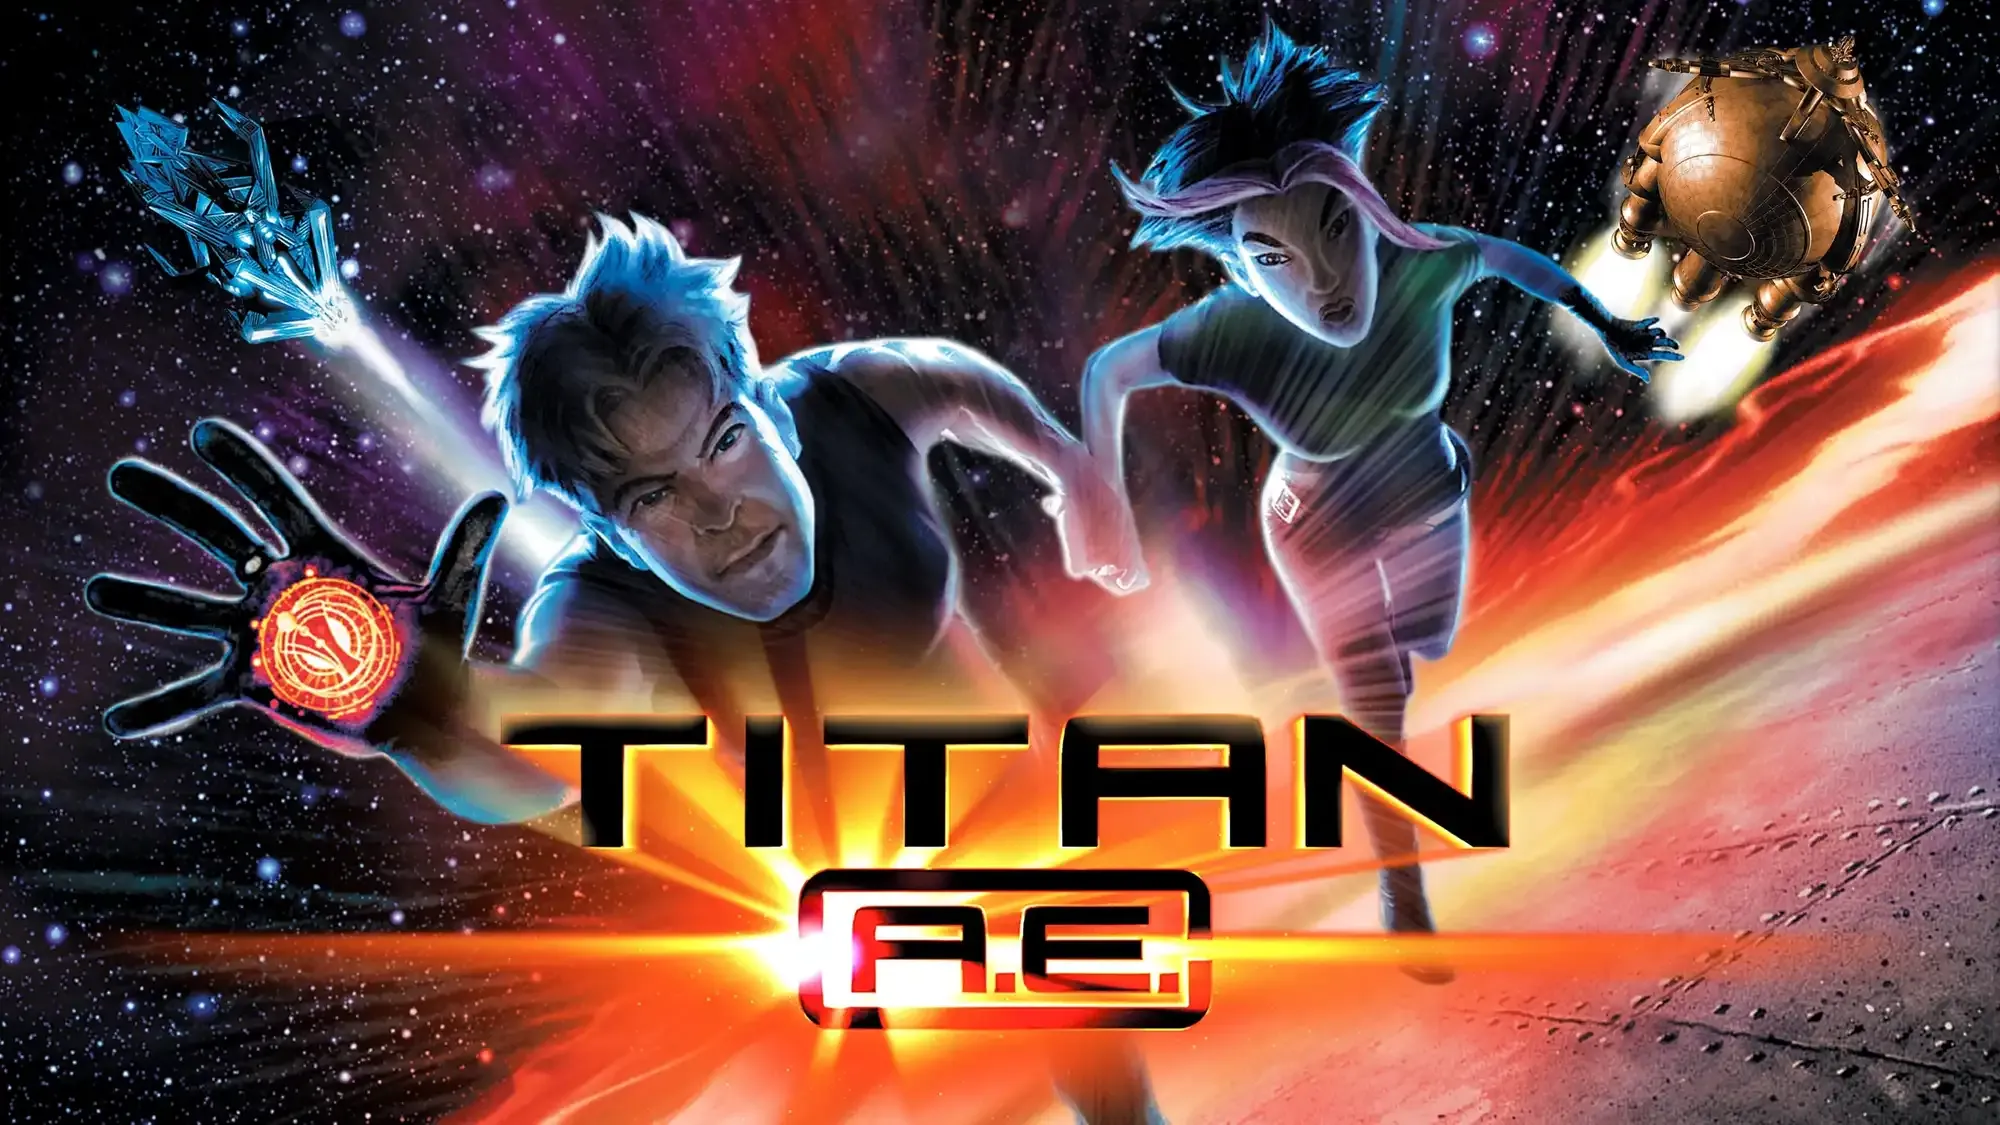 Titan A.E. movie review